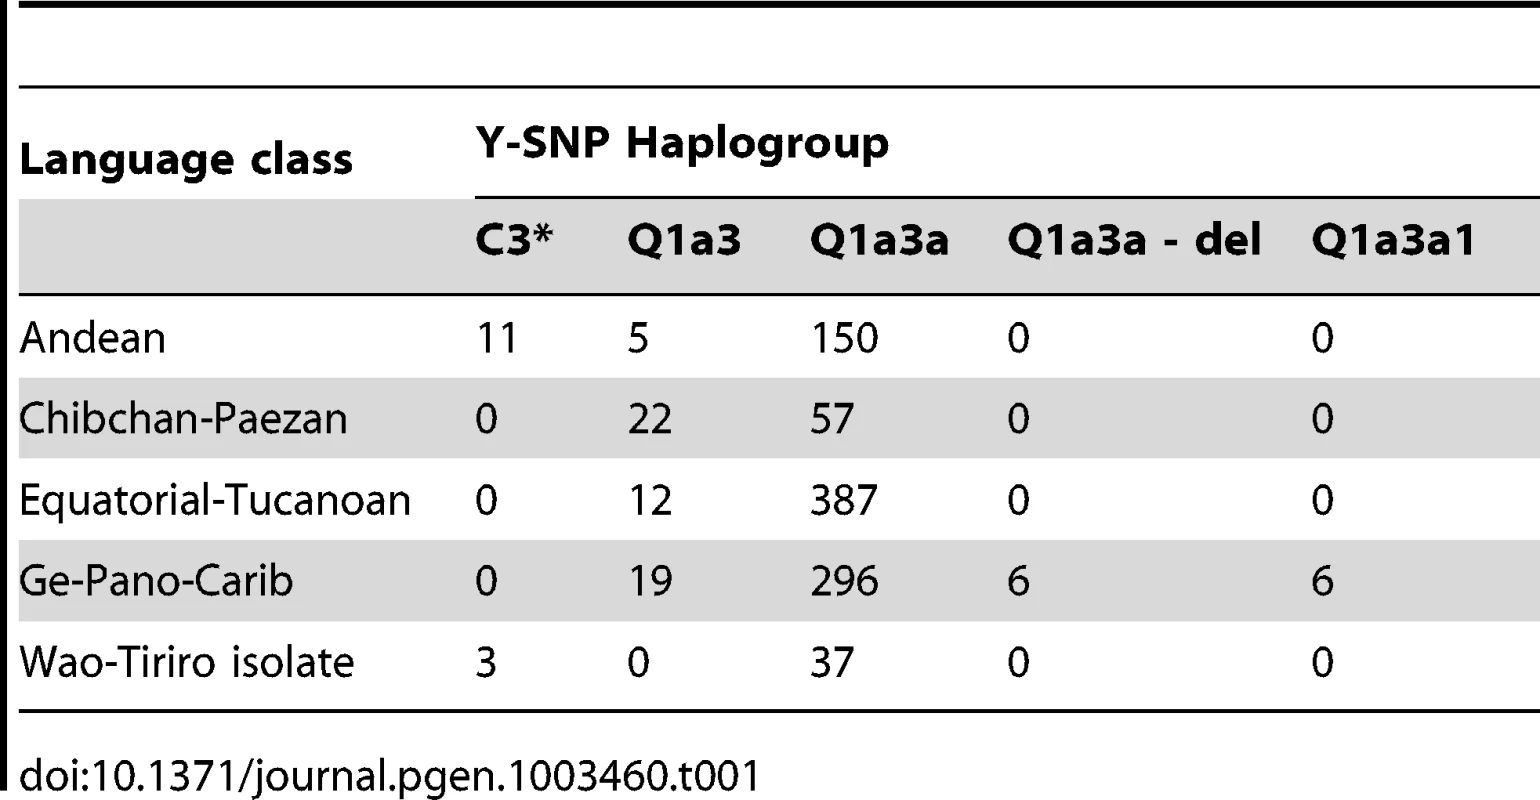 Correlation between Y-SNP haplogroup and language class.